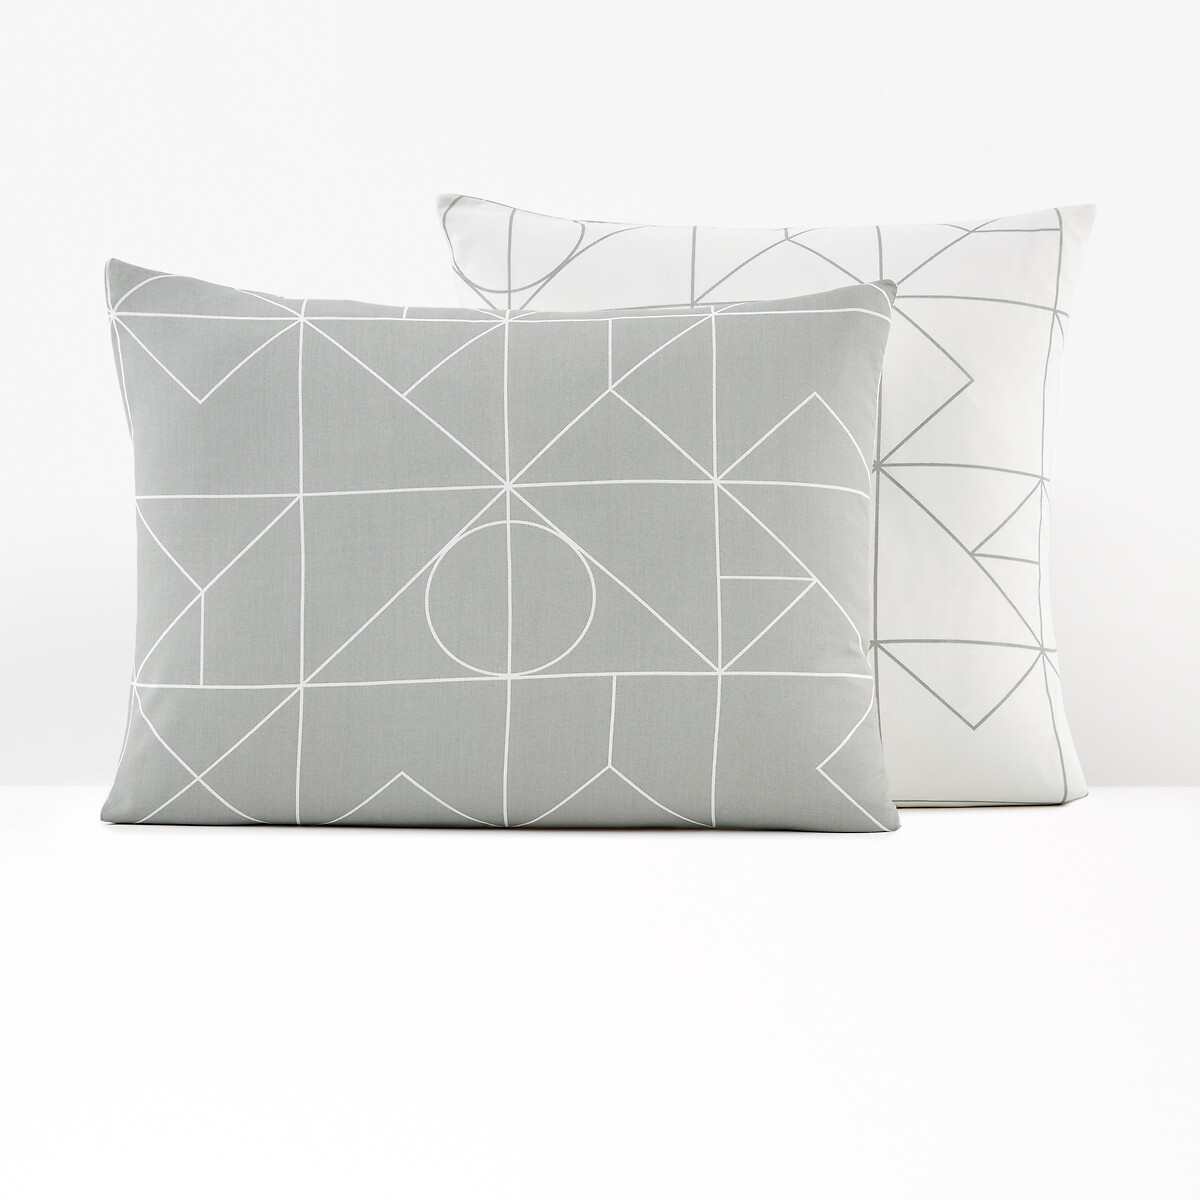 Vidmey Geometric 100% Cotton Pillowcase